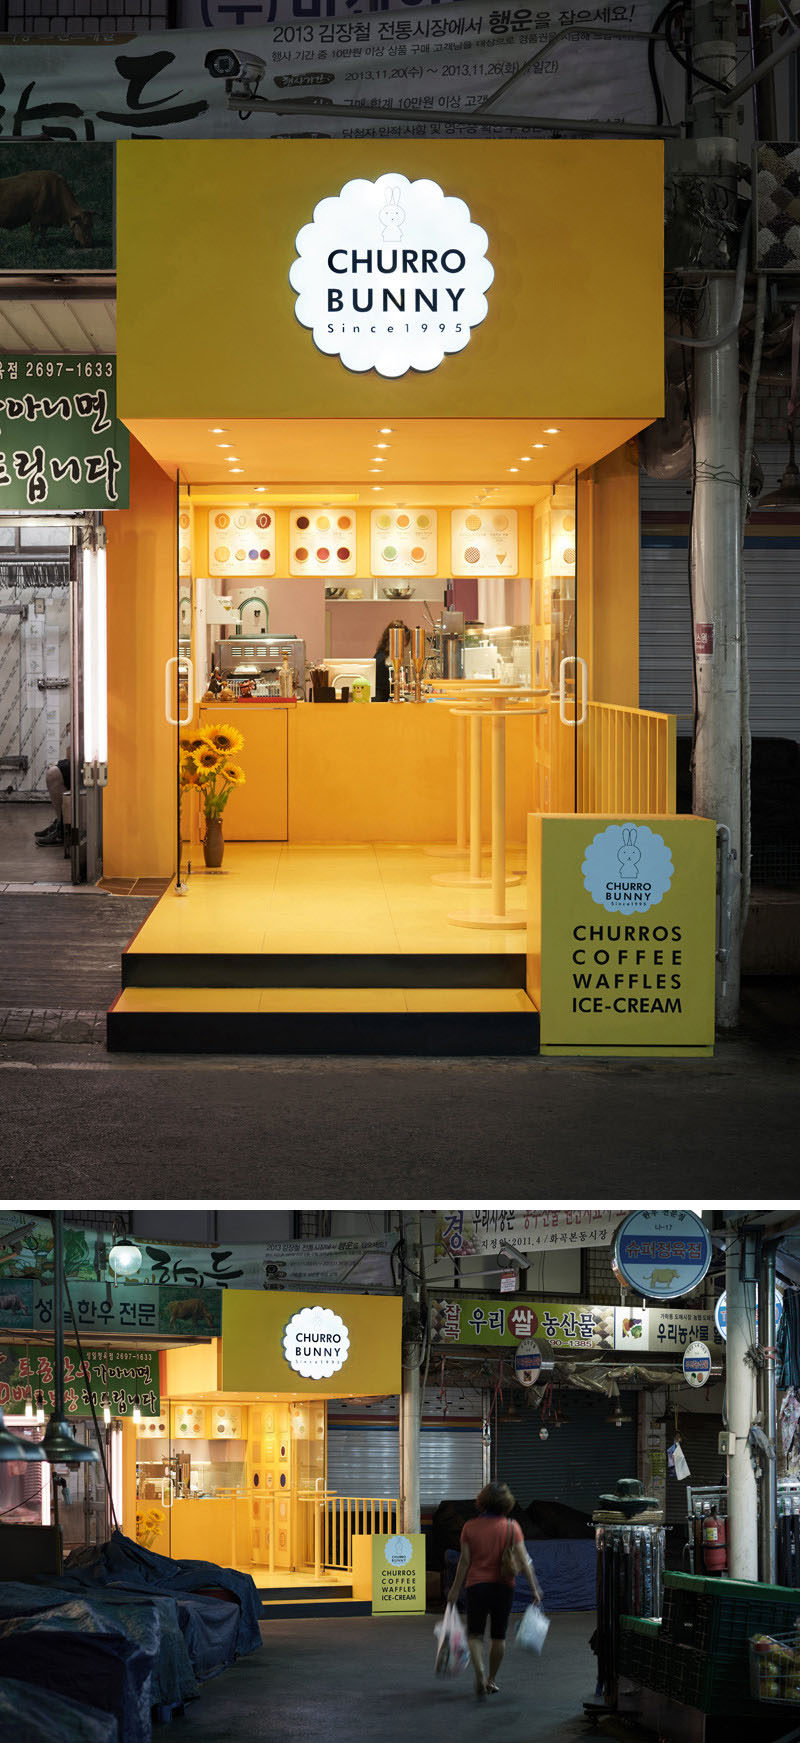 10 уникальных кофеен в Азии / Дизайн-студия M4 спроектировала Churro Bunny, яркое и привлекательное кафе на вынос в Сеуле, Южная Корея, которое выделяется на фоне остальных зданий на улице и добавляет причудливый оттенок желтого цвета кварталу.